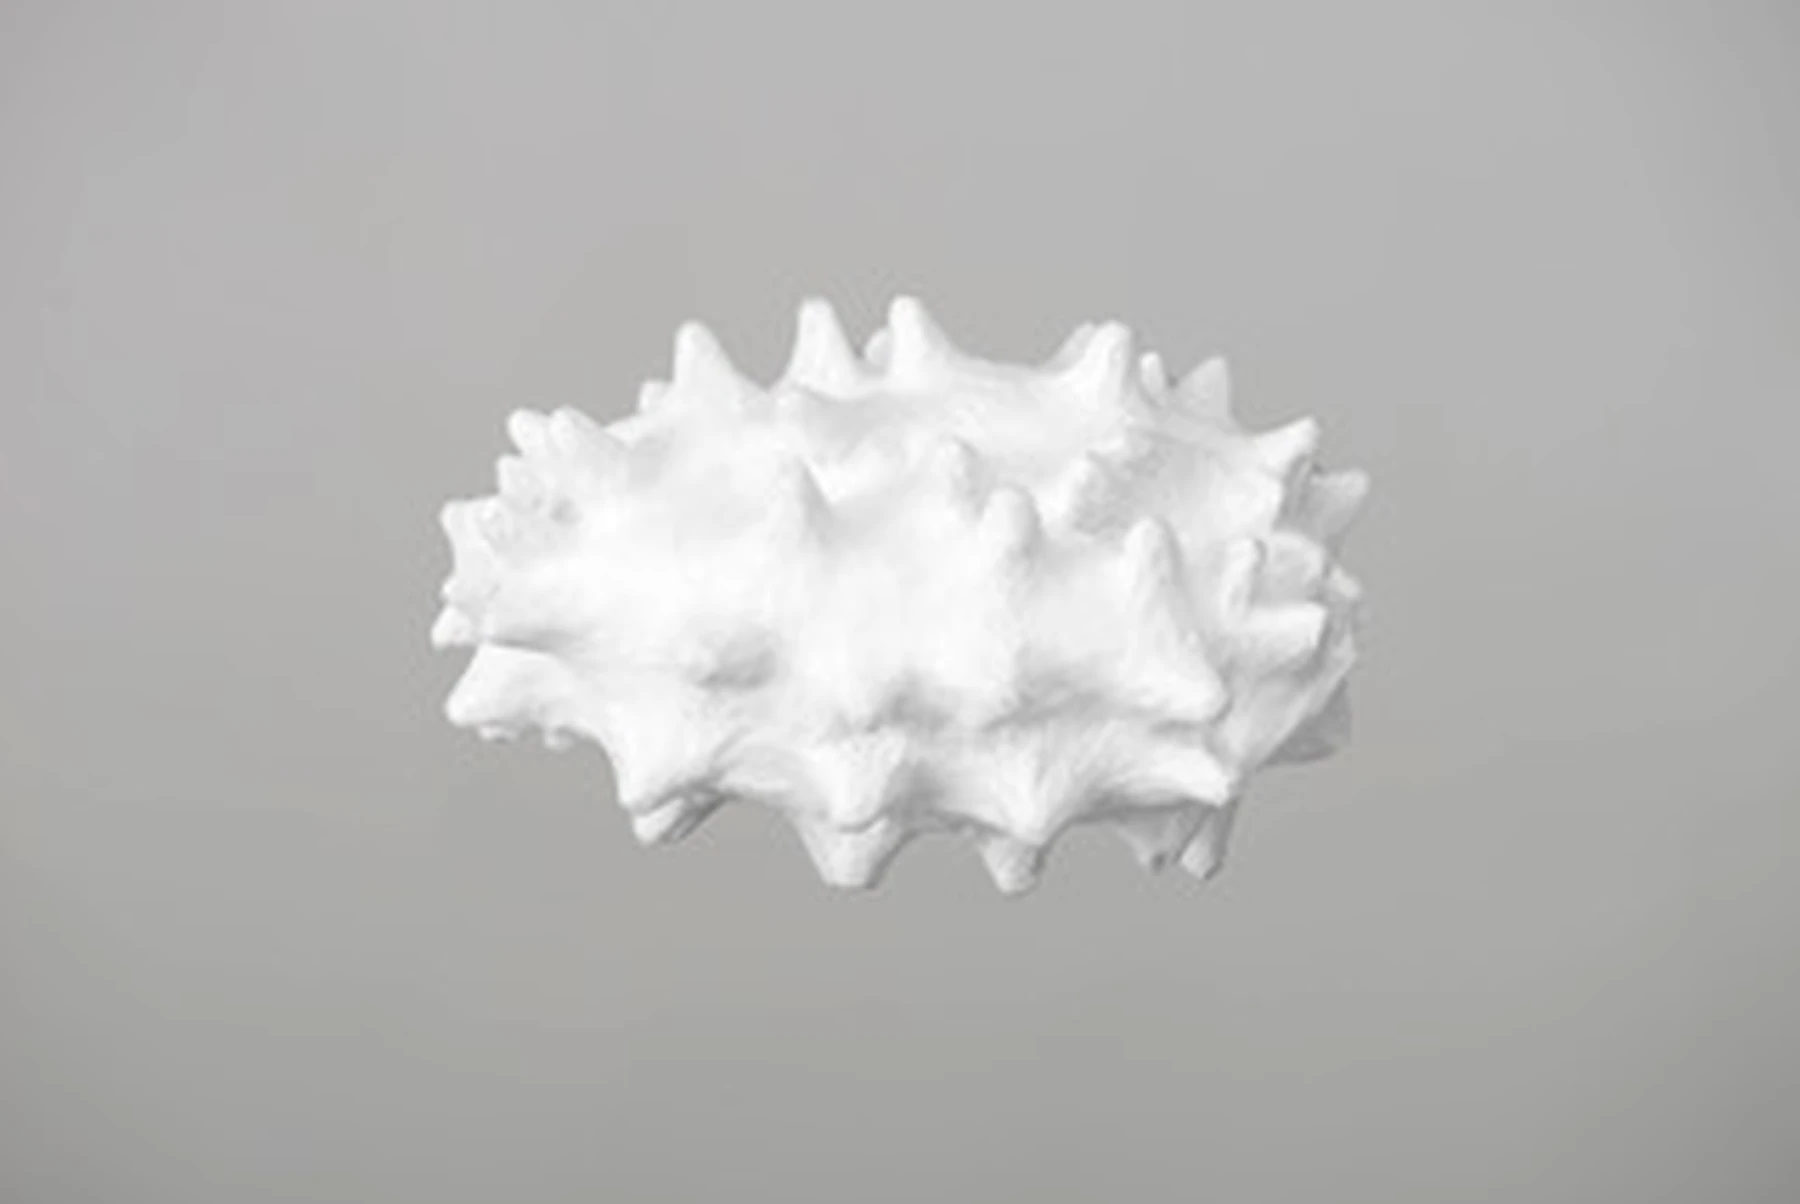 Concombre blanc 01, 2017, Seidenpapier, 9 x 13 cm